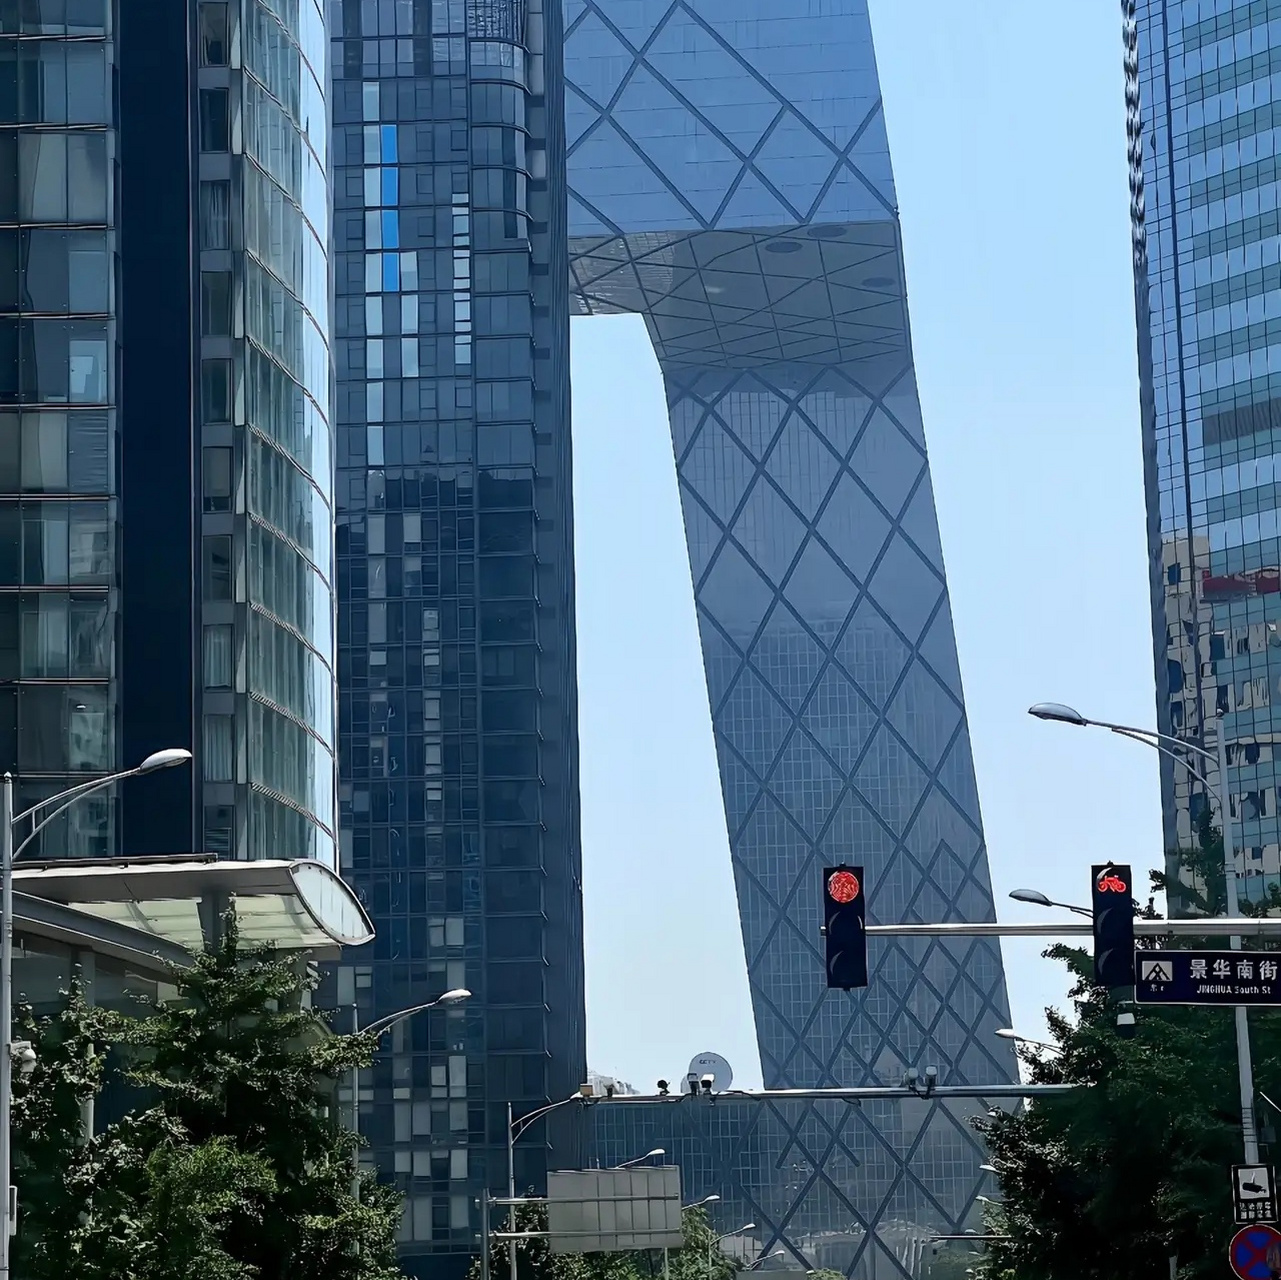 实拍:北京cbd地标7515中信大厦528米07北京第一高楼91雄伟